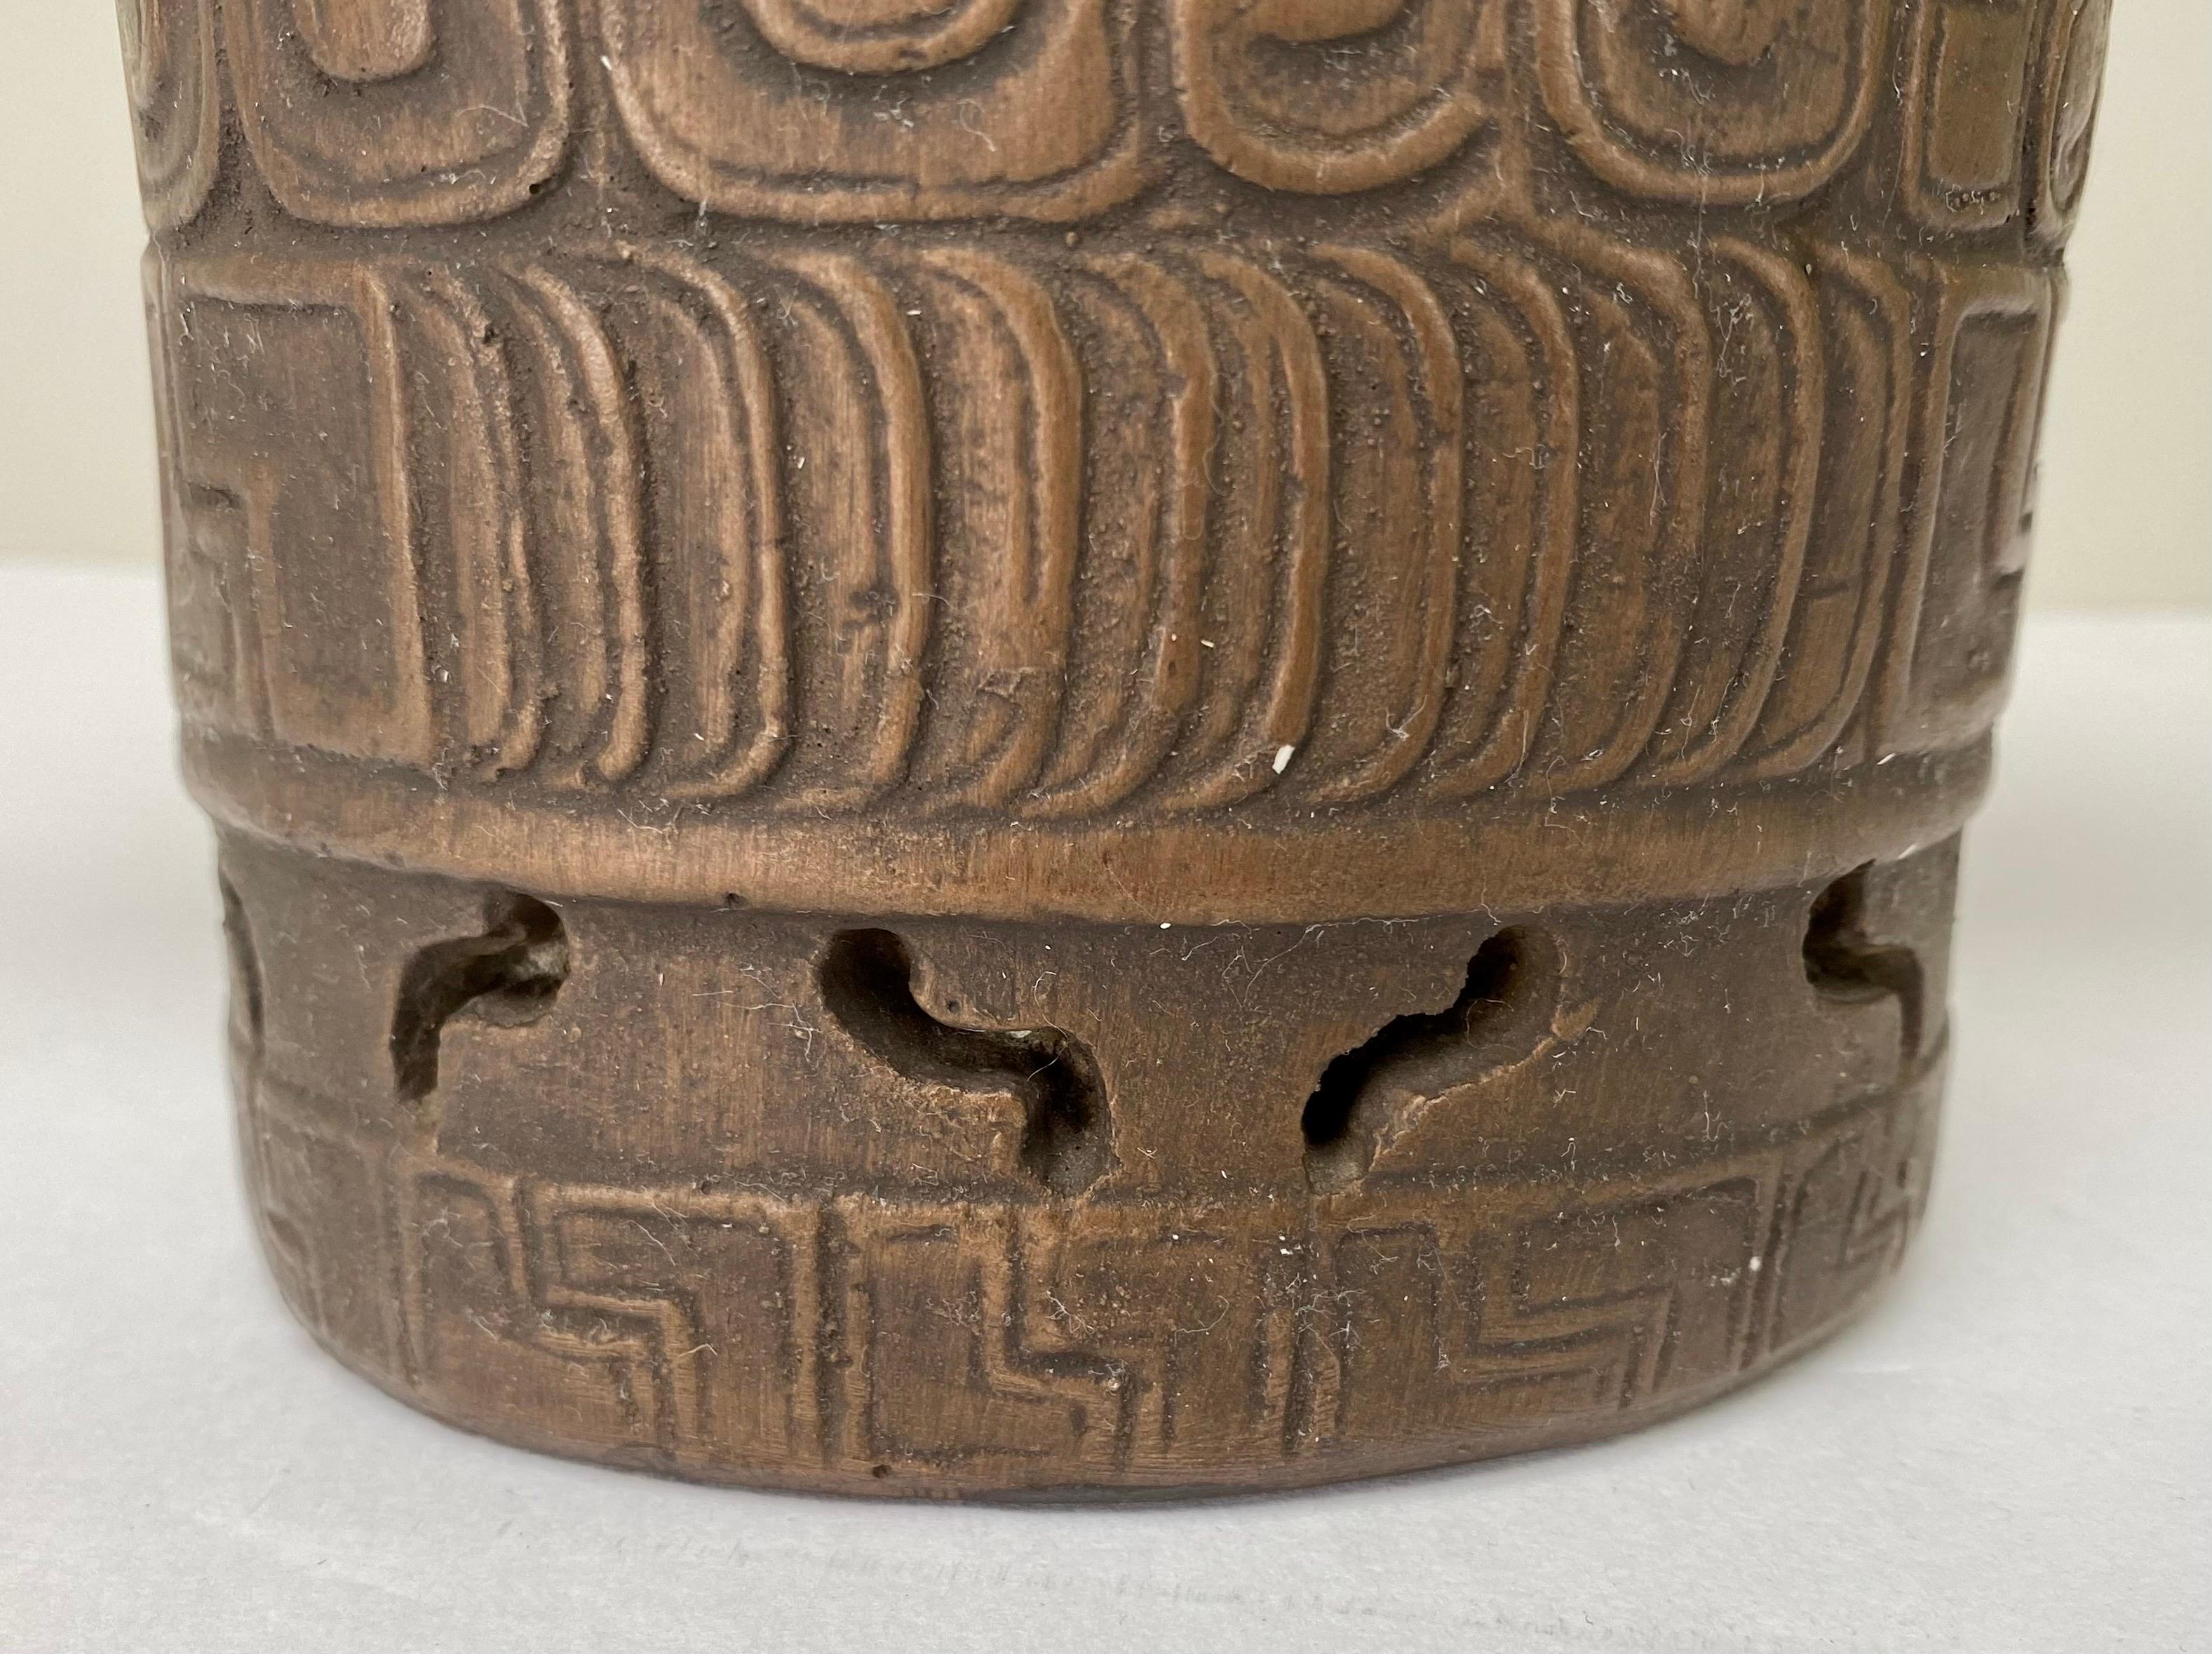 
À l'origine  Honduras,  ce vase en bronze de style maya  fait le lien entre les domaines de l'art et de la mystique ancienne. Cet extraordinaire récipient captive les sens par son design complexe et sa richesse culturelle, vous invitant à explorer